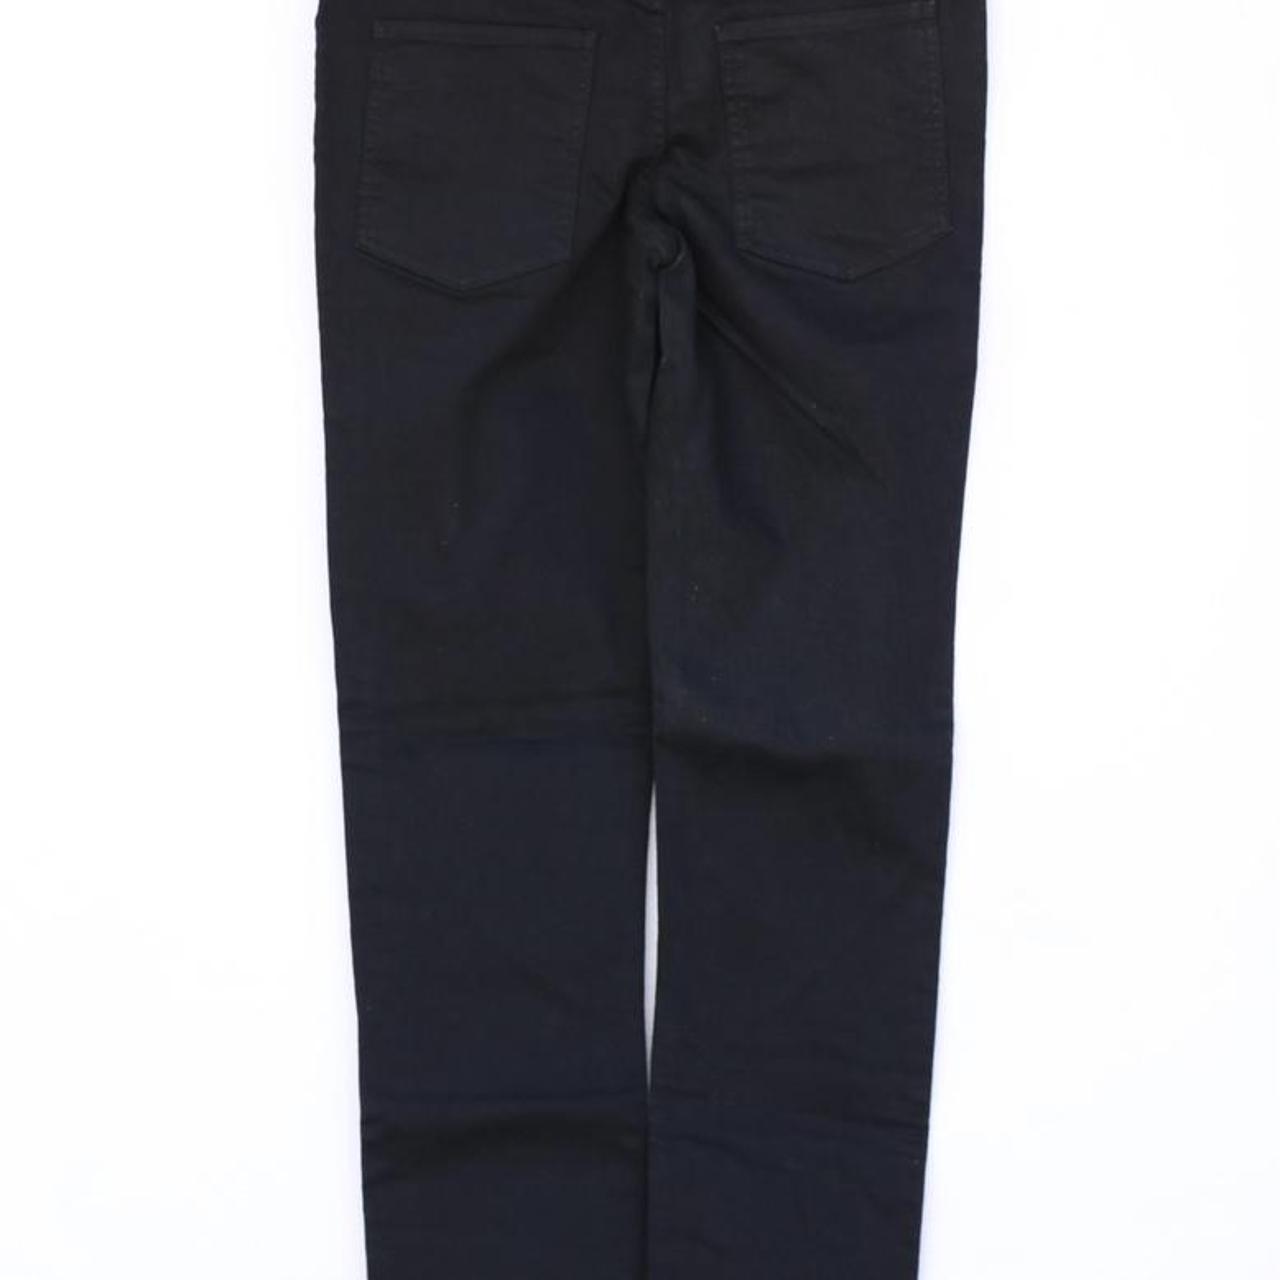 Cheap Monday Men's Black Trousers (3)